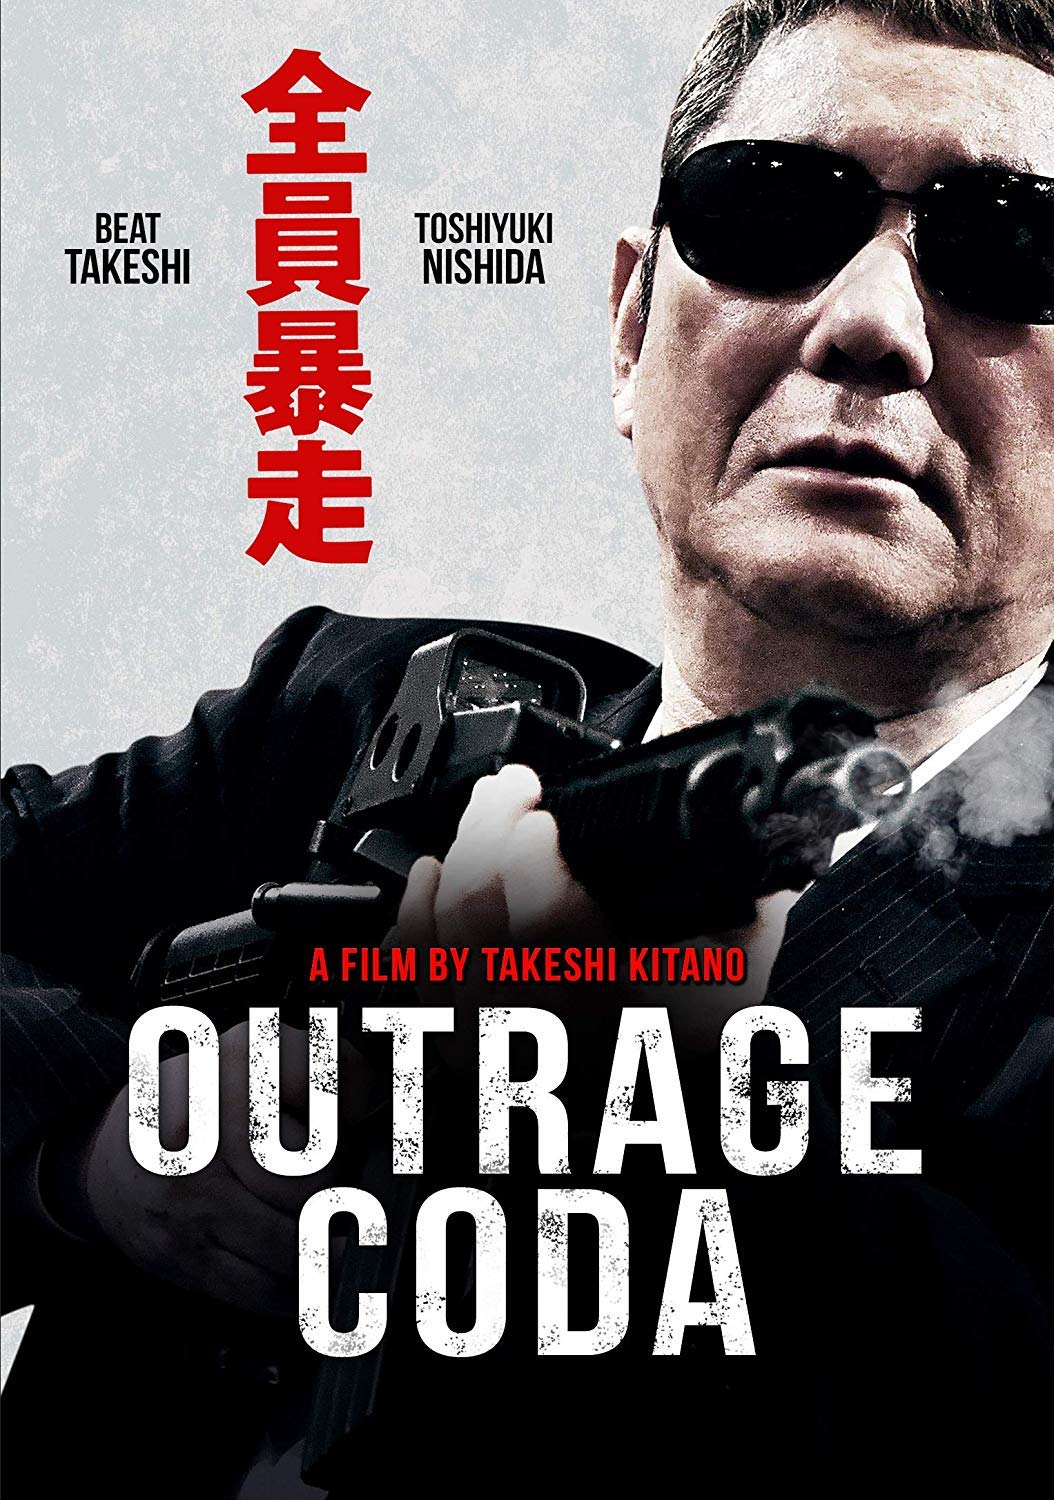 دانلود فیلم Outrage Coda 2017